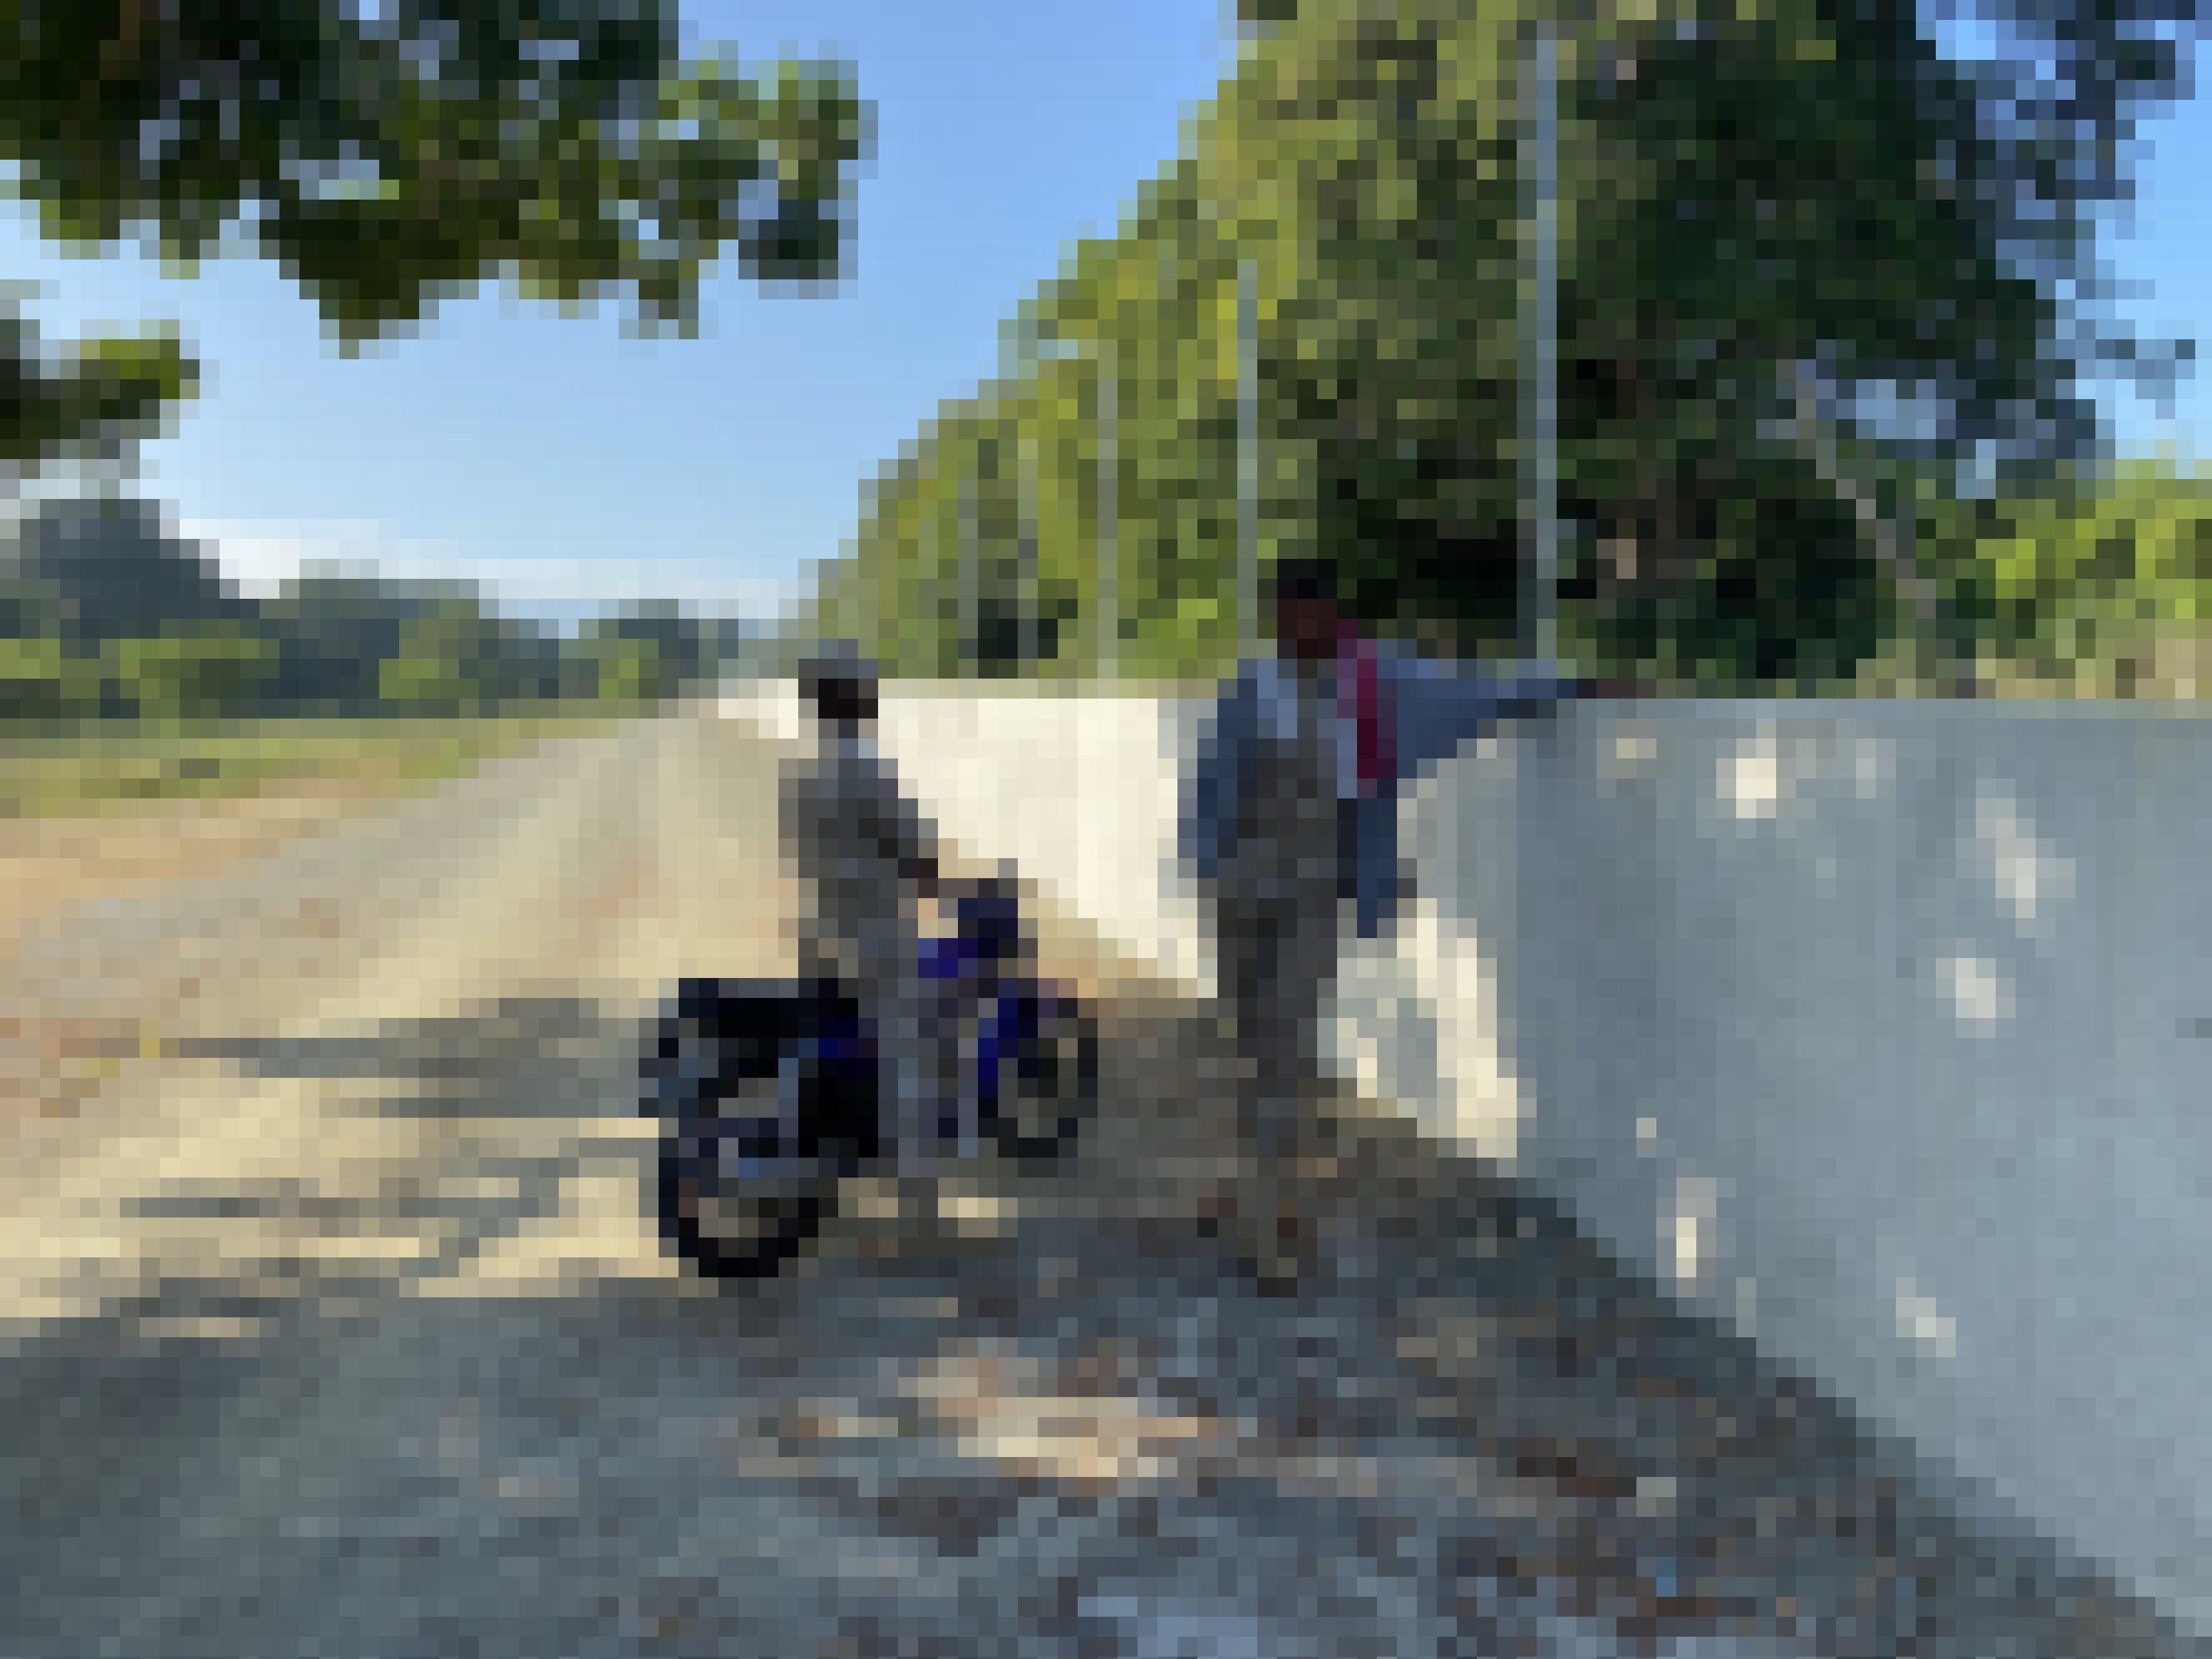 Ein Grenzschützer in heller Uniform auf einem Motorrad und ein stehender Grenzschützer an einer etwa 1 Meter hohen Grenzmauer aus Beton